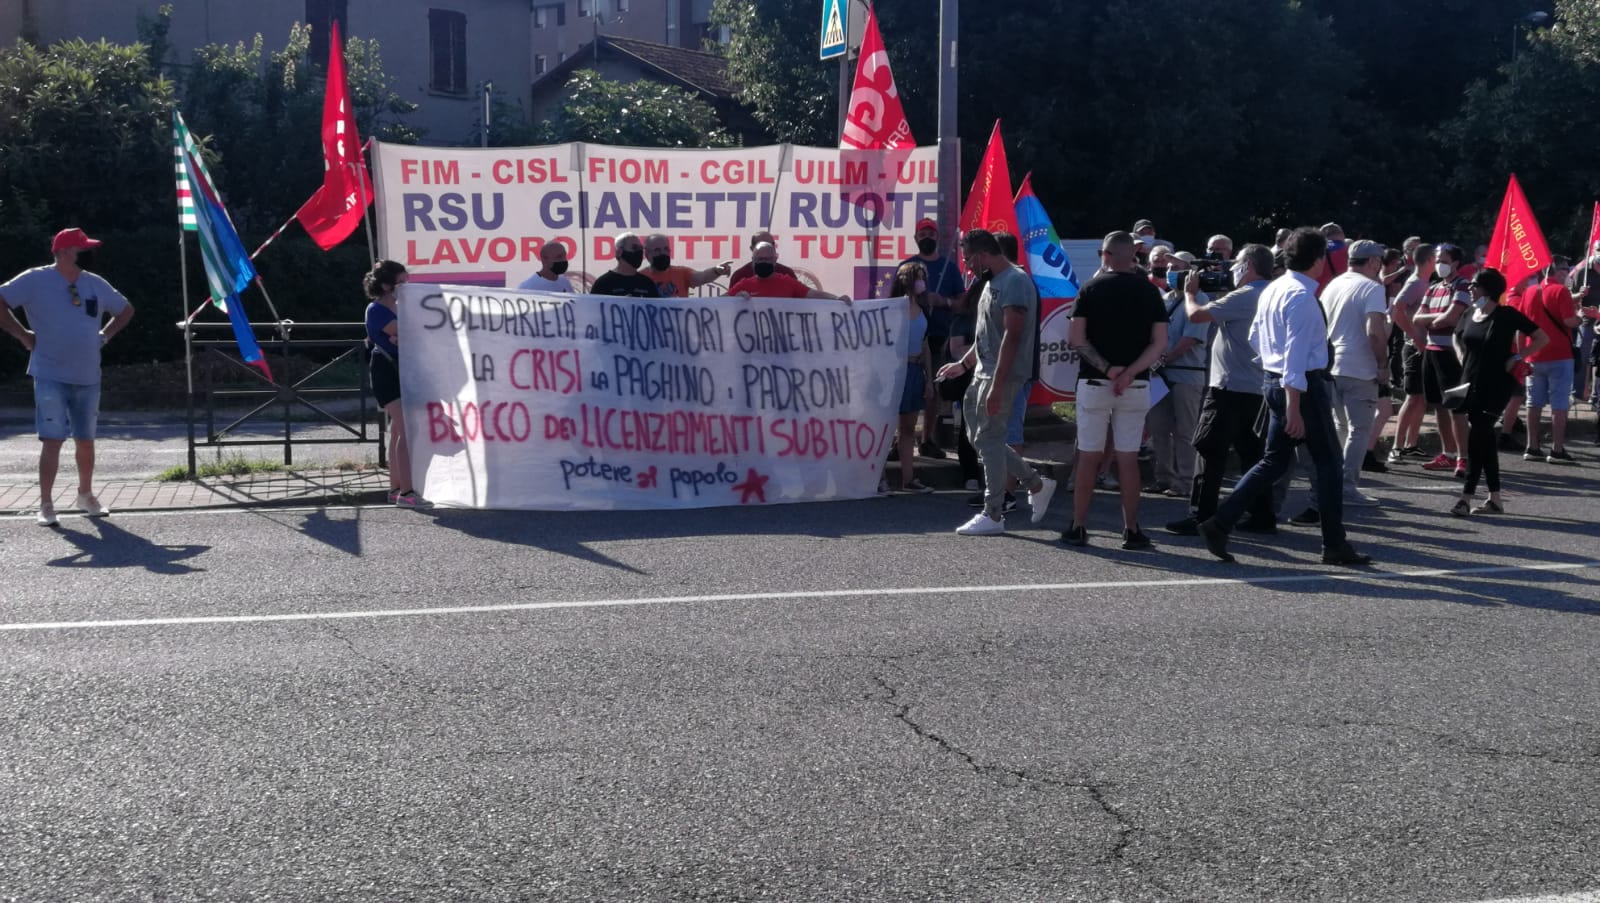 Chiusura Gianetti, Pd Mb: “Siamo a fianco dei lavoratori in questa battaglia”